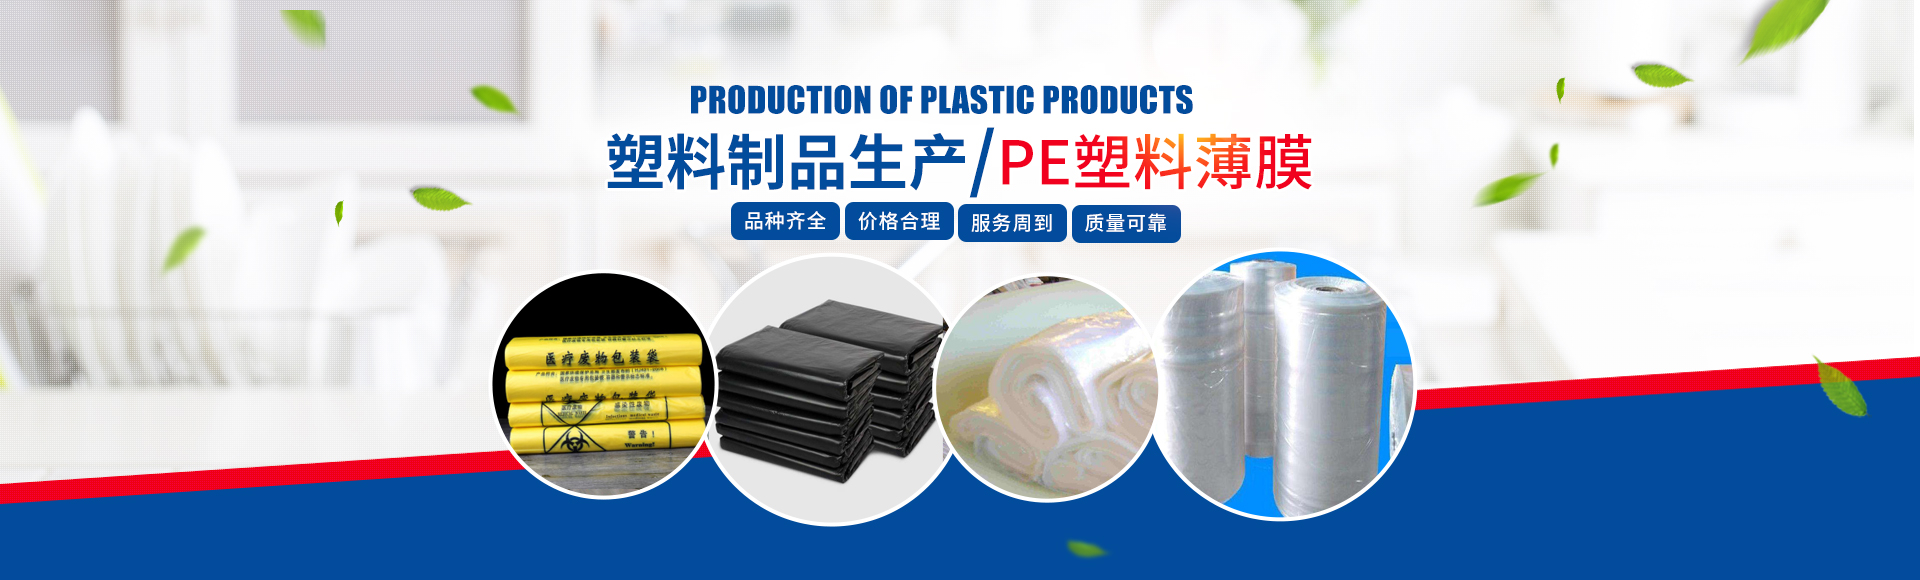 優質塑料制品生產,價格合理PE塑料薄膜